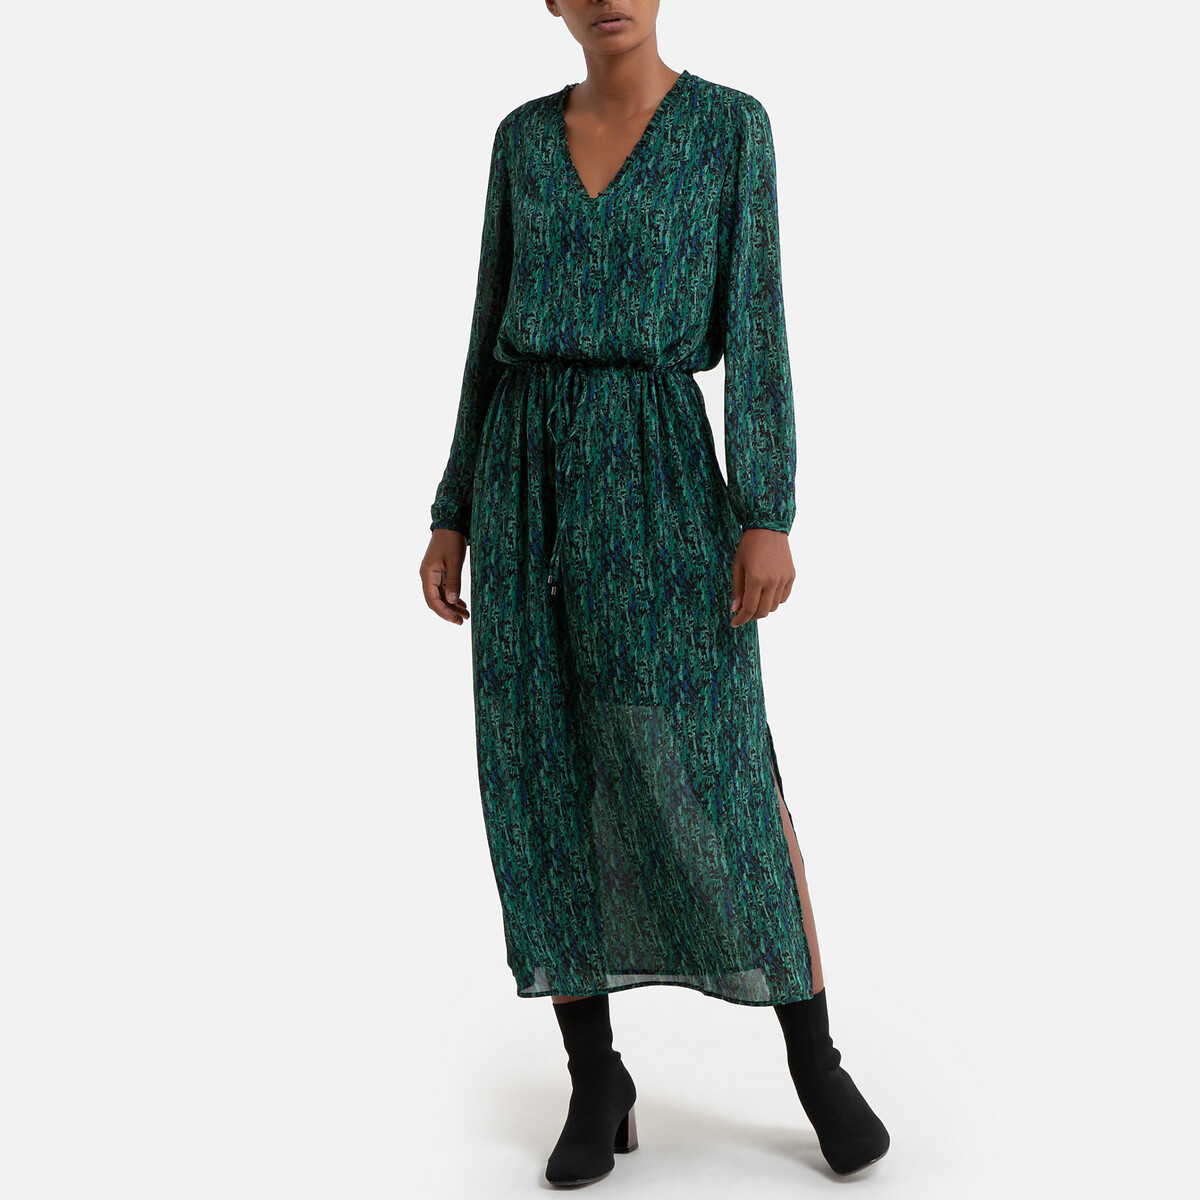 Платье La Redoute Из вуали с принтом длинное с длинными рукавами 40 (FR) - 46 (RUS) зеленый, размер 40 (FR) - 46 (RUS) Из вуали с принтом длинное с длинными рукавами 40 (FR) - 46 (RUS) зеленый - фото 1